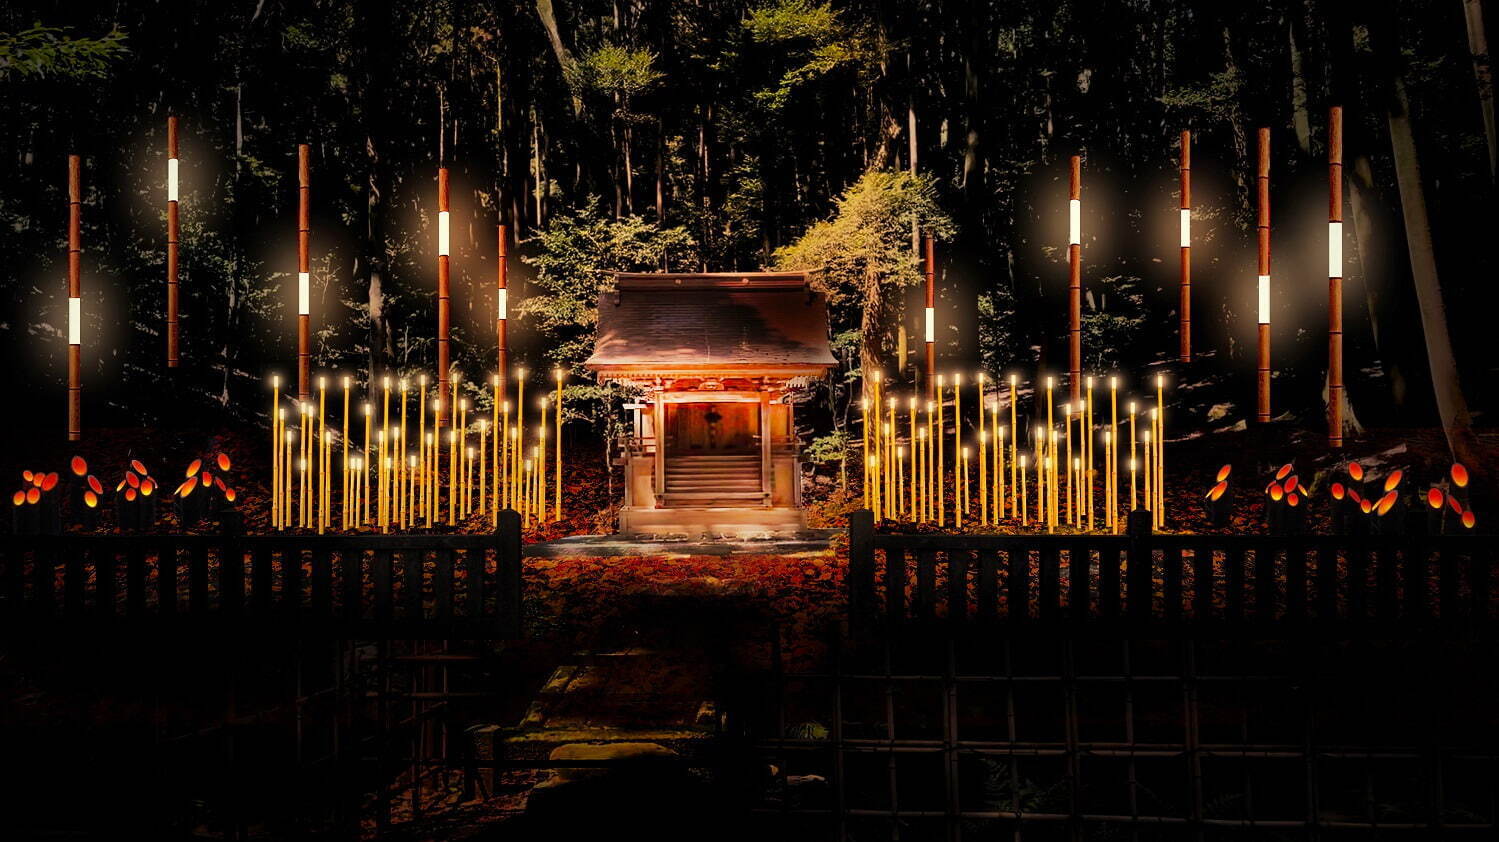 秋イベント ひかりの京都 紅葉ライトアップ 竹灯籠など 夕暮れ時 夜間に社寺を特別拝観 ファッションプレス